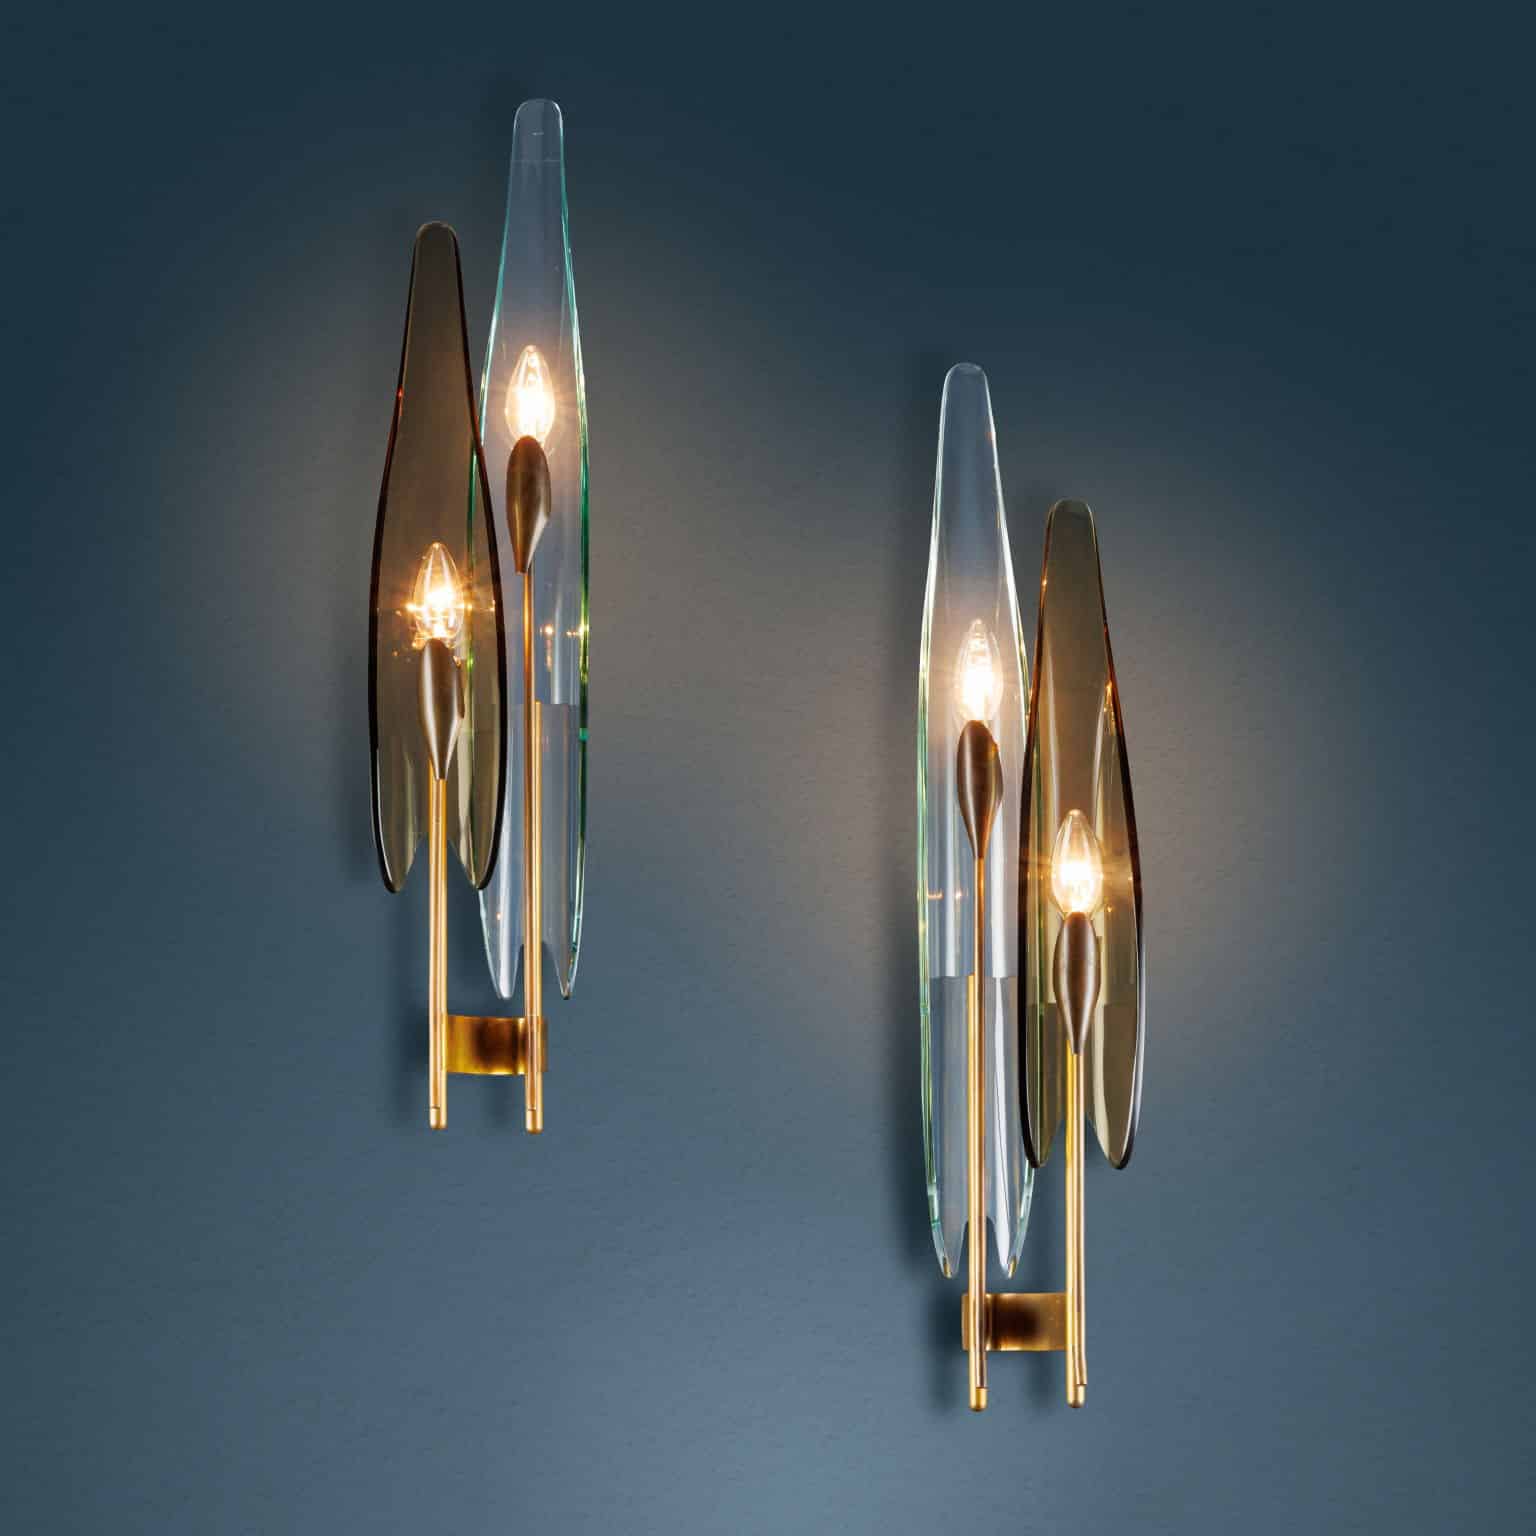 Pair of ‘1461’ Max Ingrand FontanaArte lamps